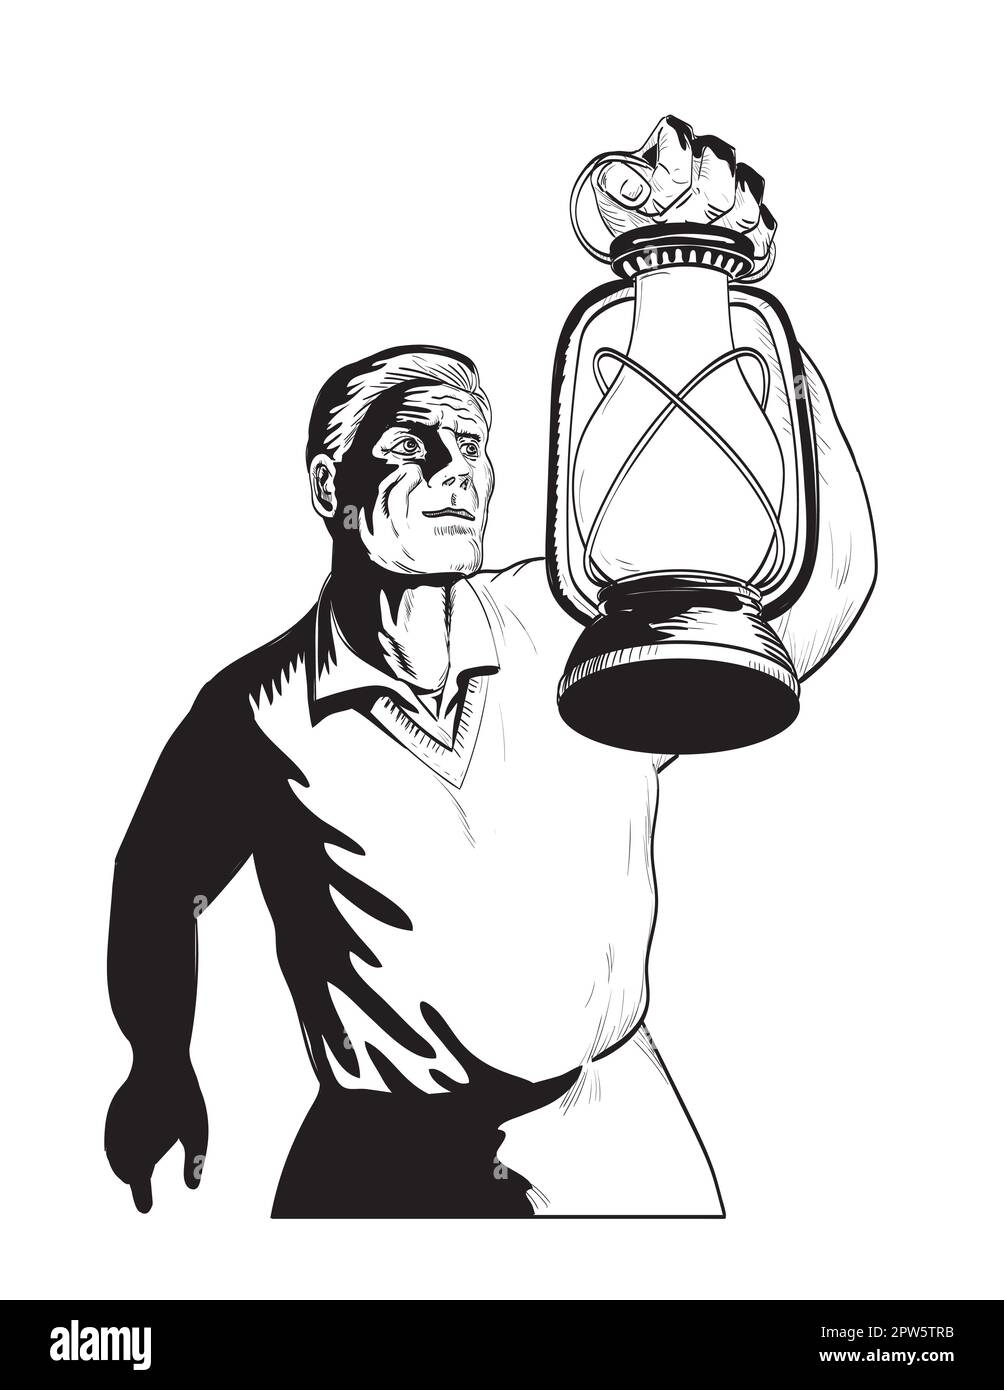 Comics-Zeichnung oder Illustration eines Mannes, der eine Bauernlaterne oder Kerosinlampe in der Hand hält, von einem niedrigen Winkel aus auf einem isolierten Hintergrund in bla betrachtet Stockfoto